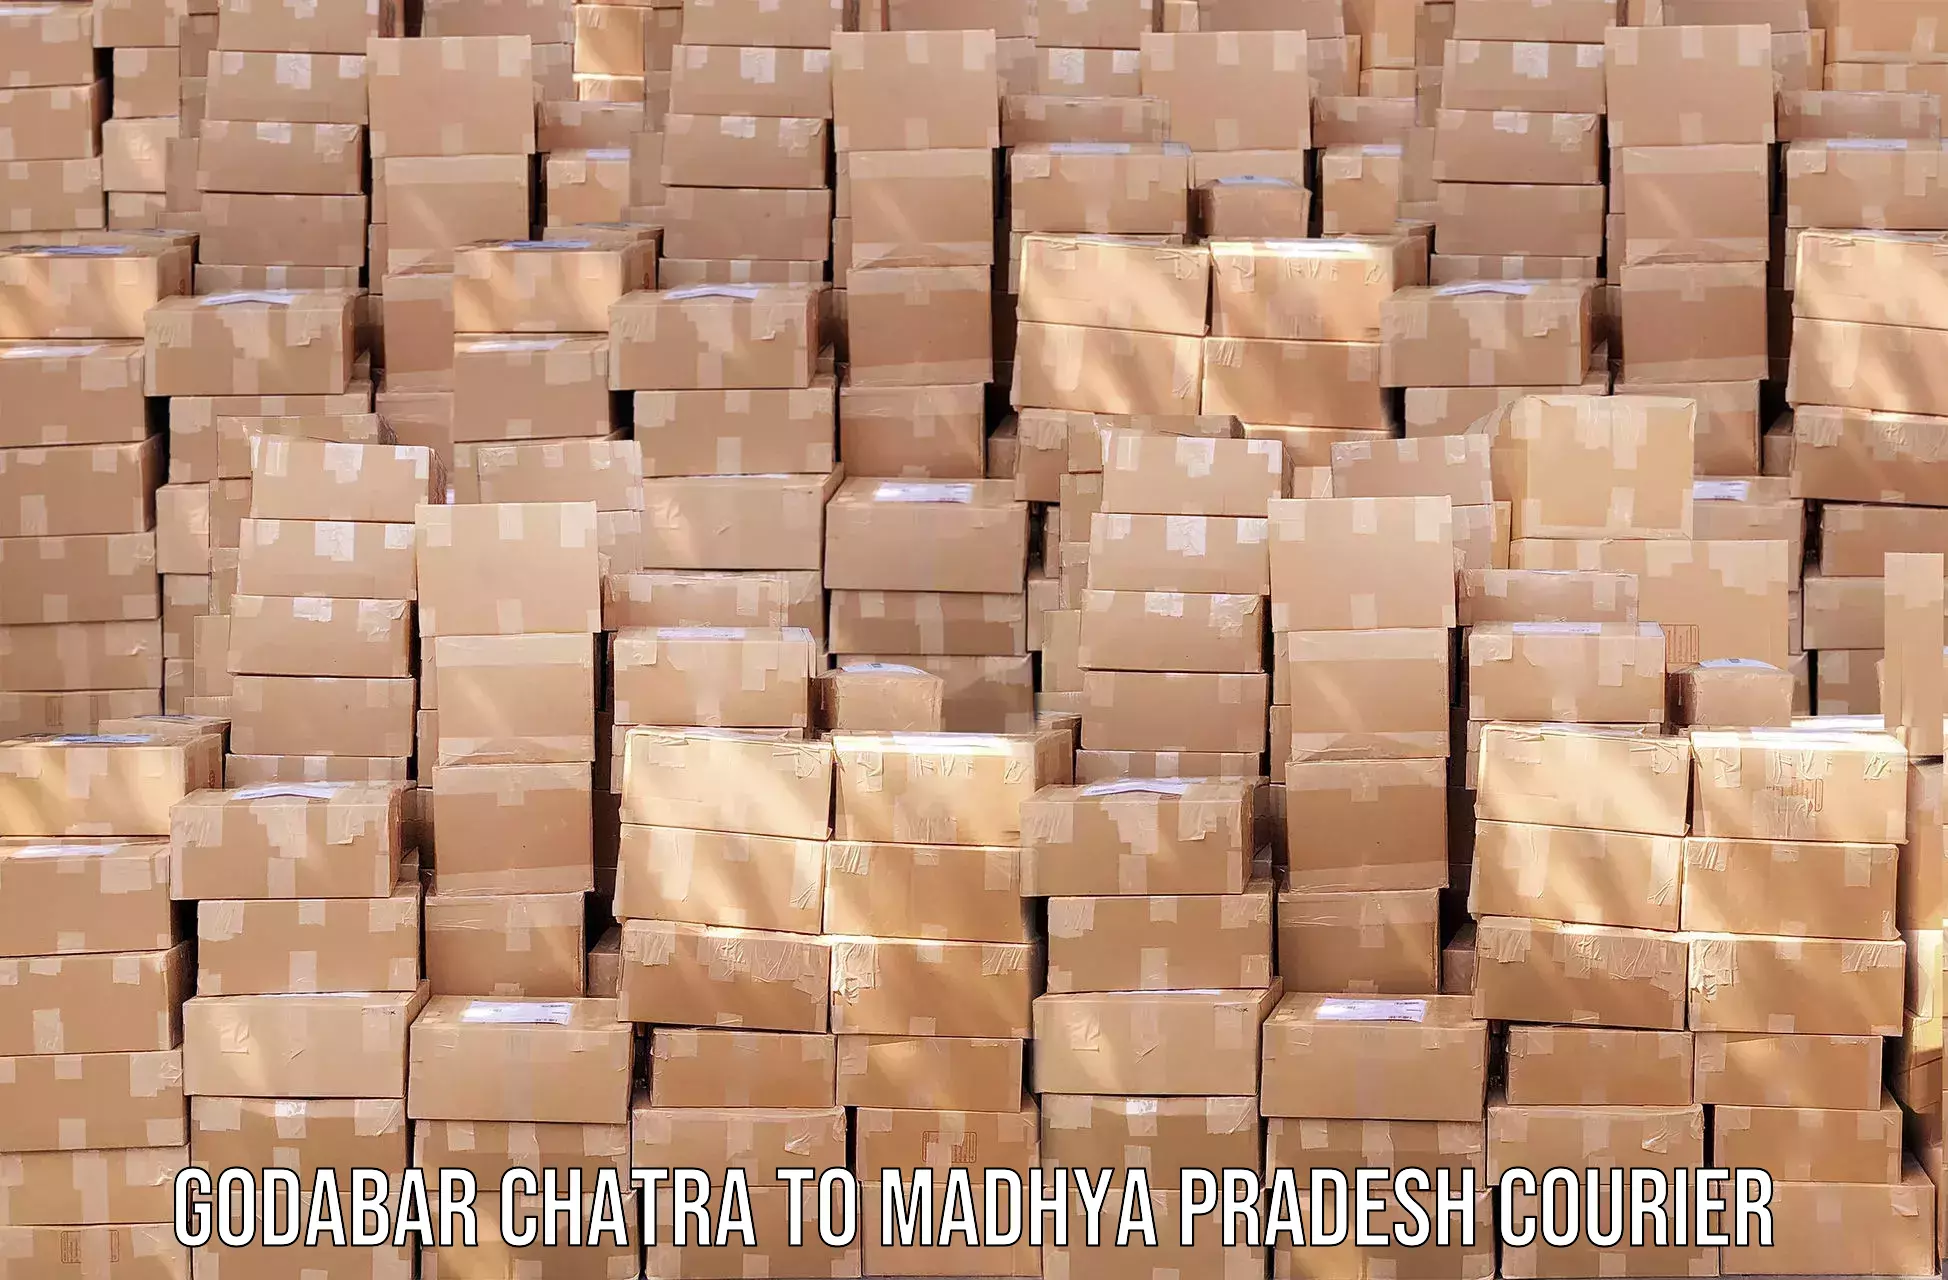 High-efficiency logistics Godabar Chatra to Nainpur